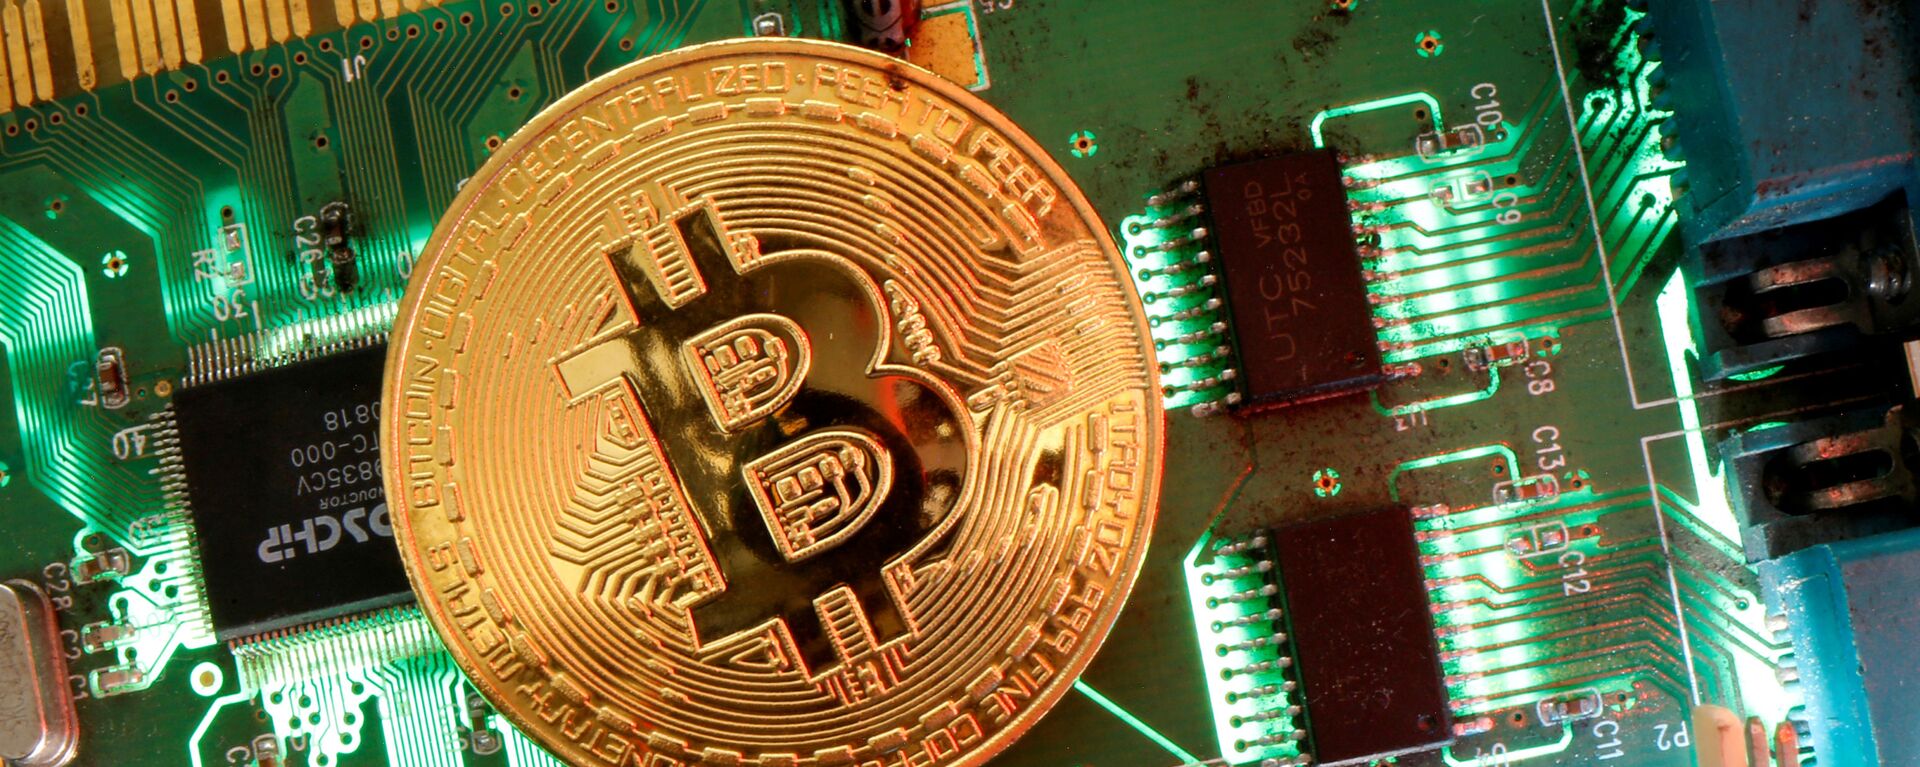 Đại diện của tiền ảo Bitcoin được nhìn thấy trên bo mạch chủ trong hình minh họa này được chụp vào ngày 24 tháng 4 năm 2020 - Sputnik Việt Nam, 1920, 21.03.2021